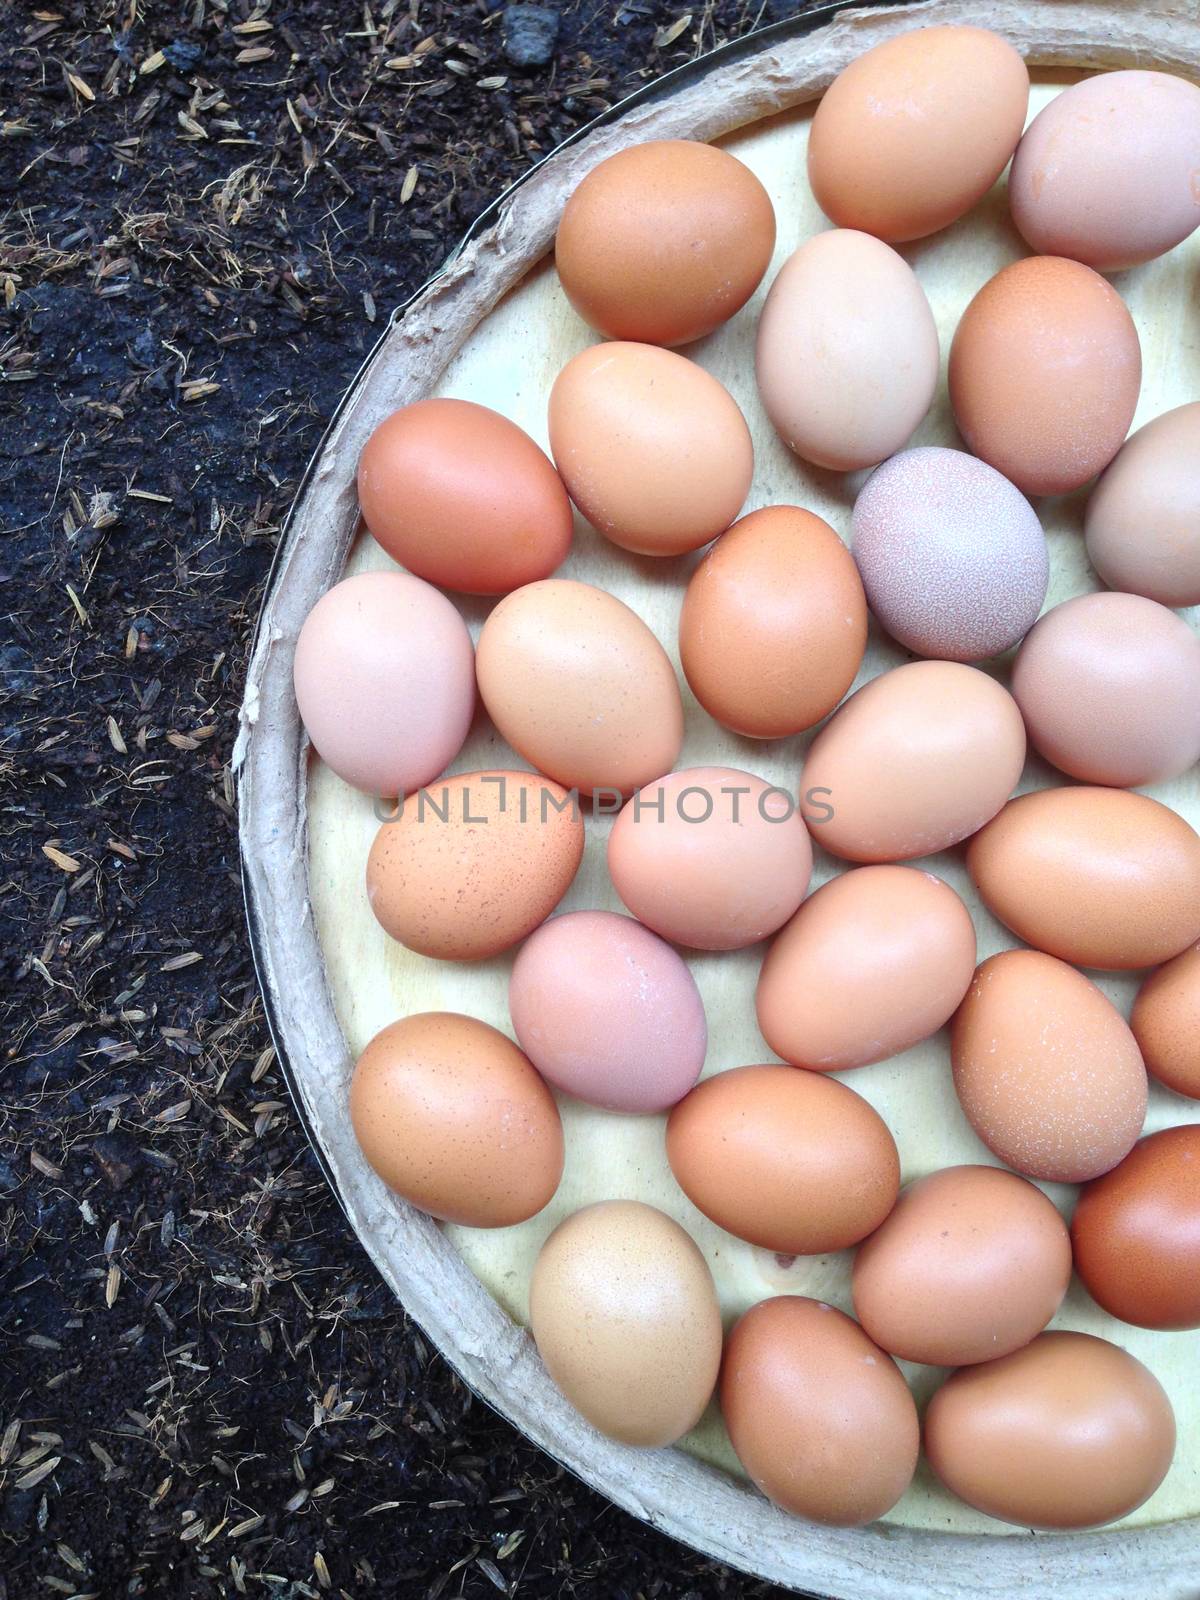 Eggs on wooden plate on black soil